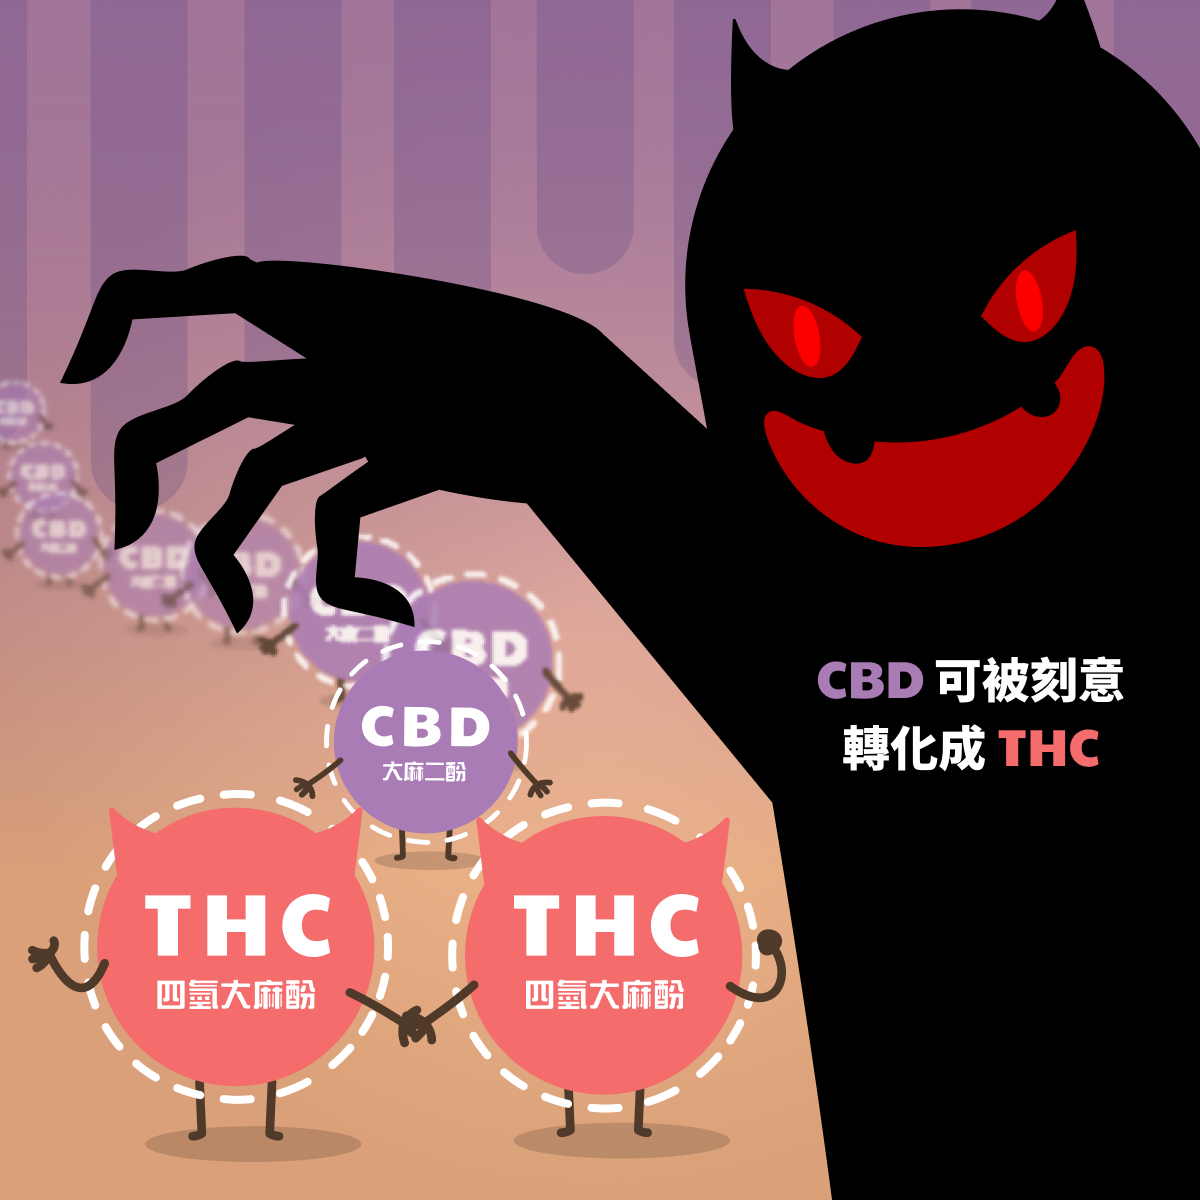 CBD可被刻意轉化成THC